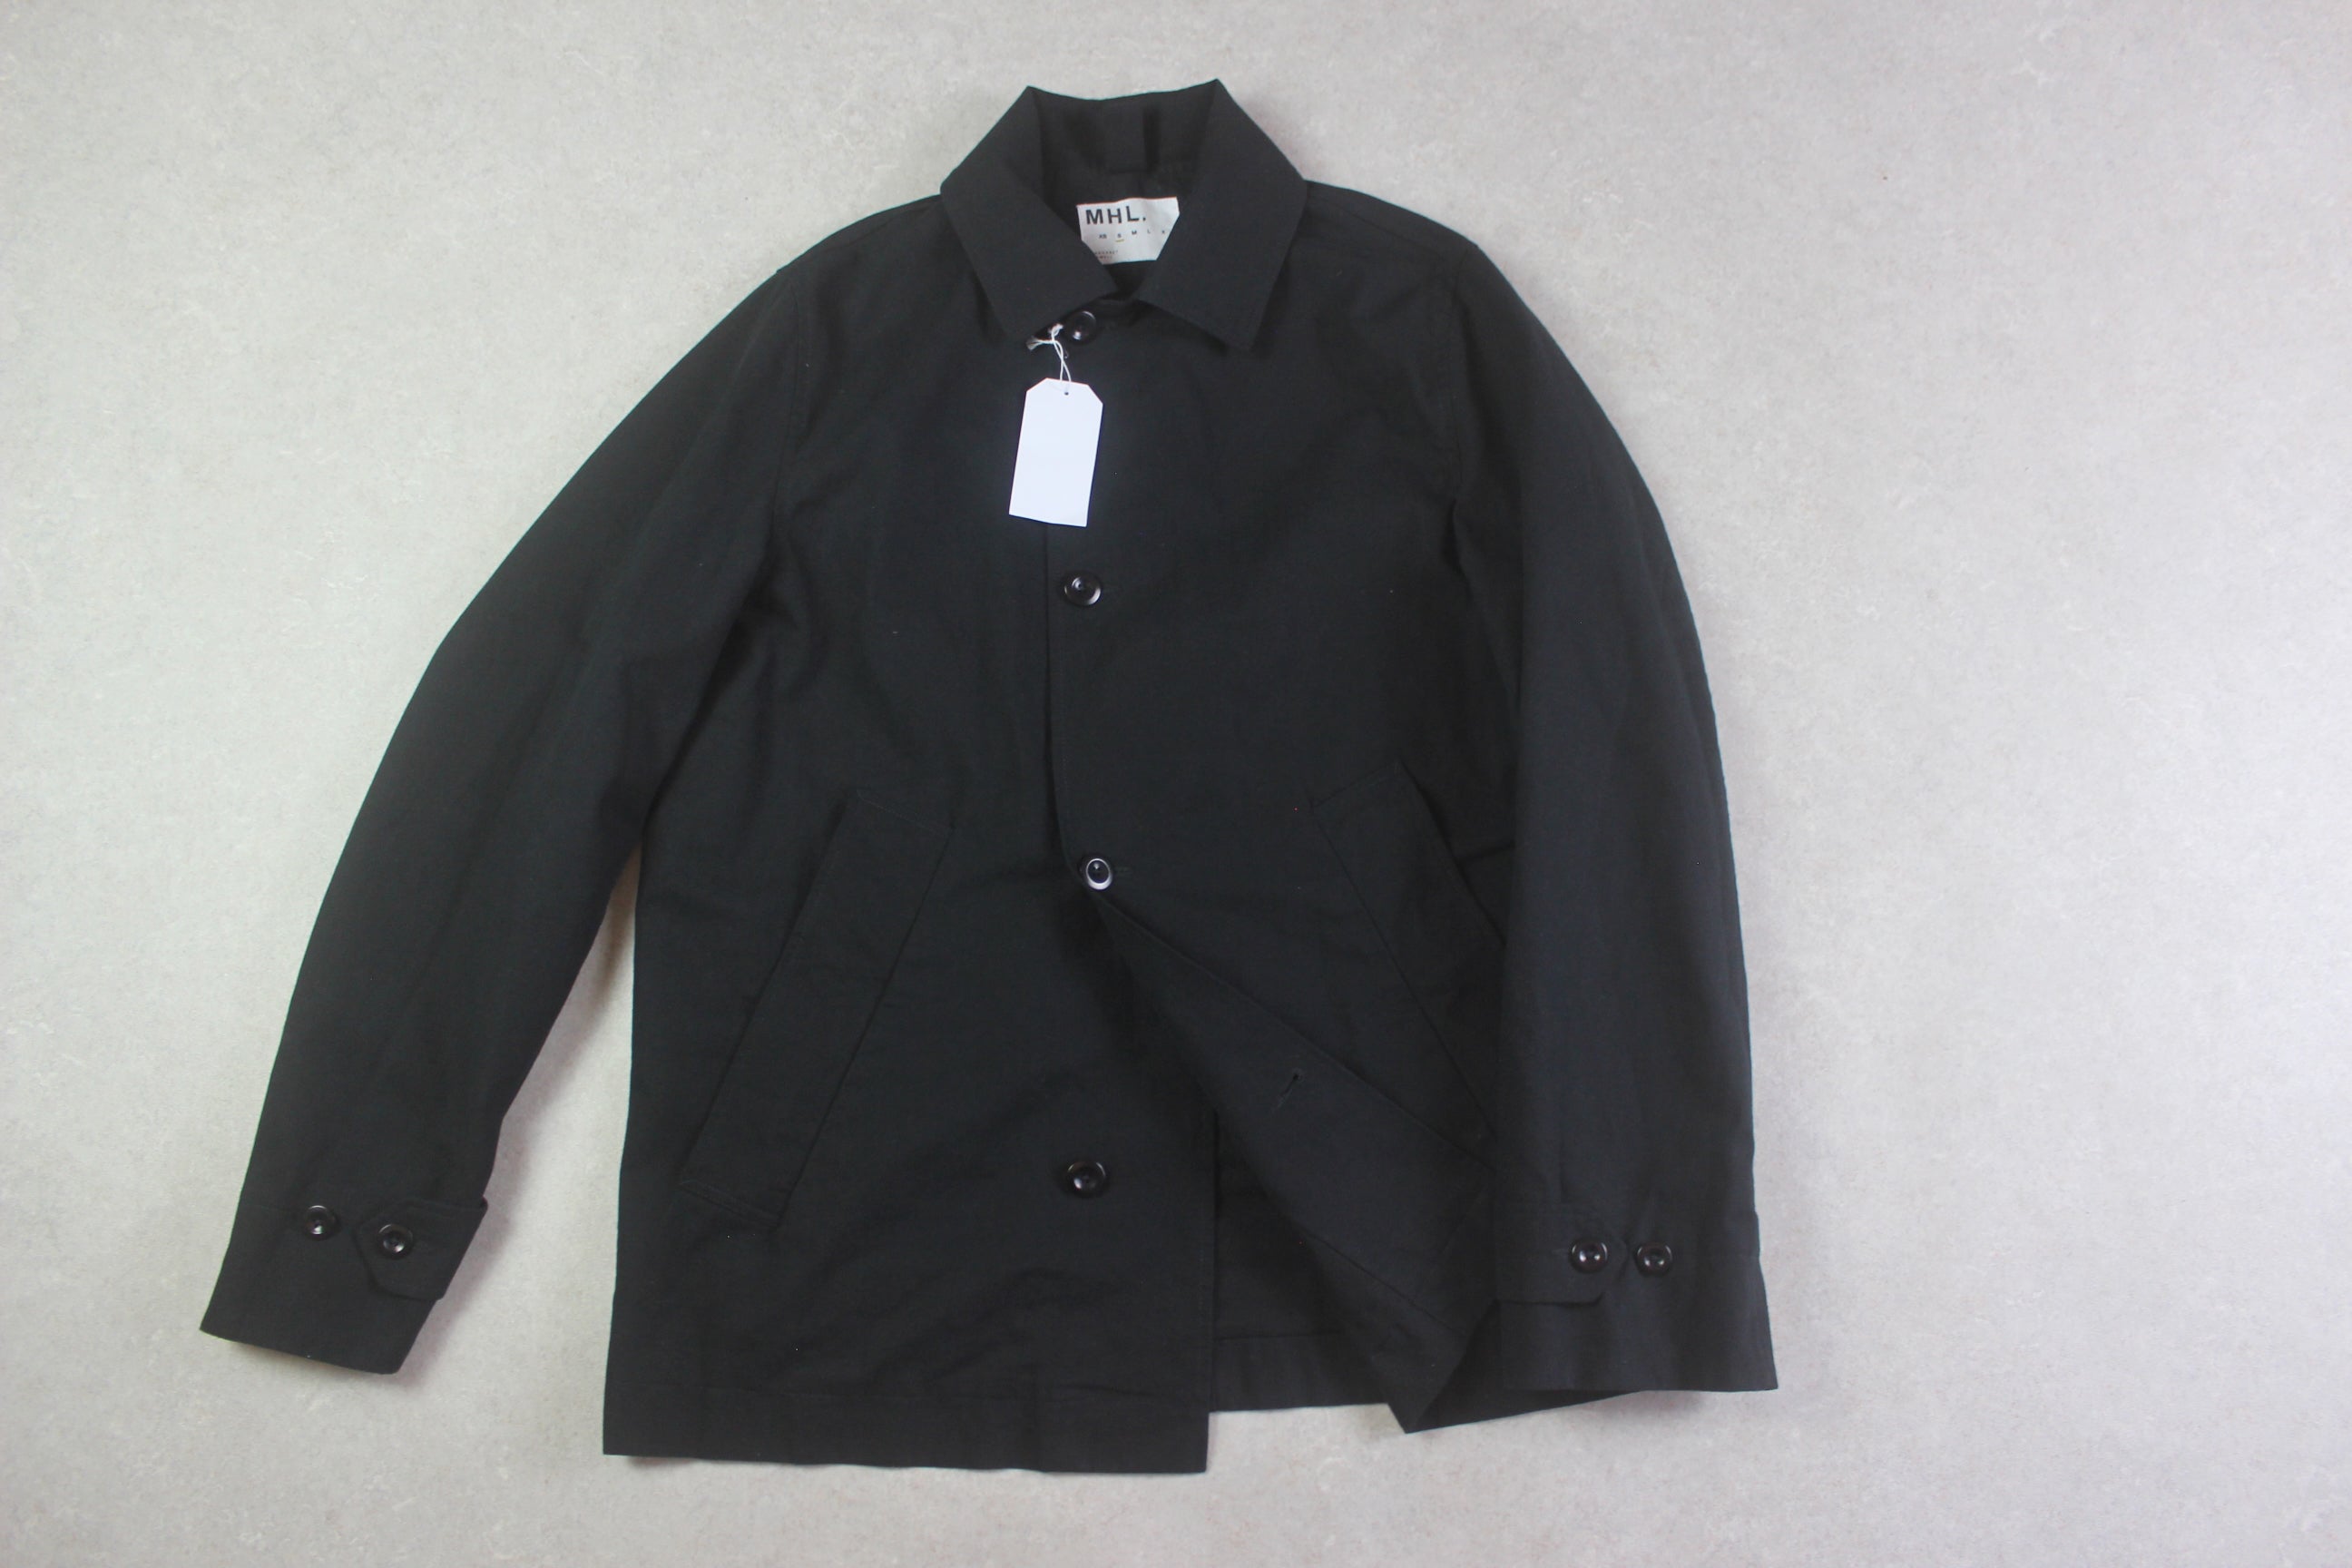 MHL Margaret Howell - Brand New Coat Jacket - Black - Small